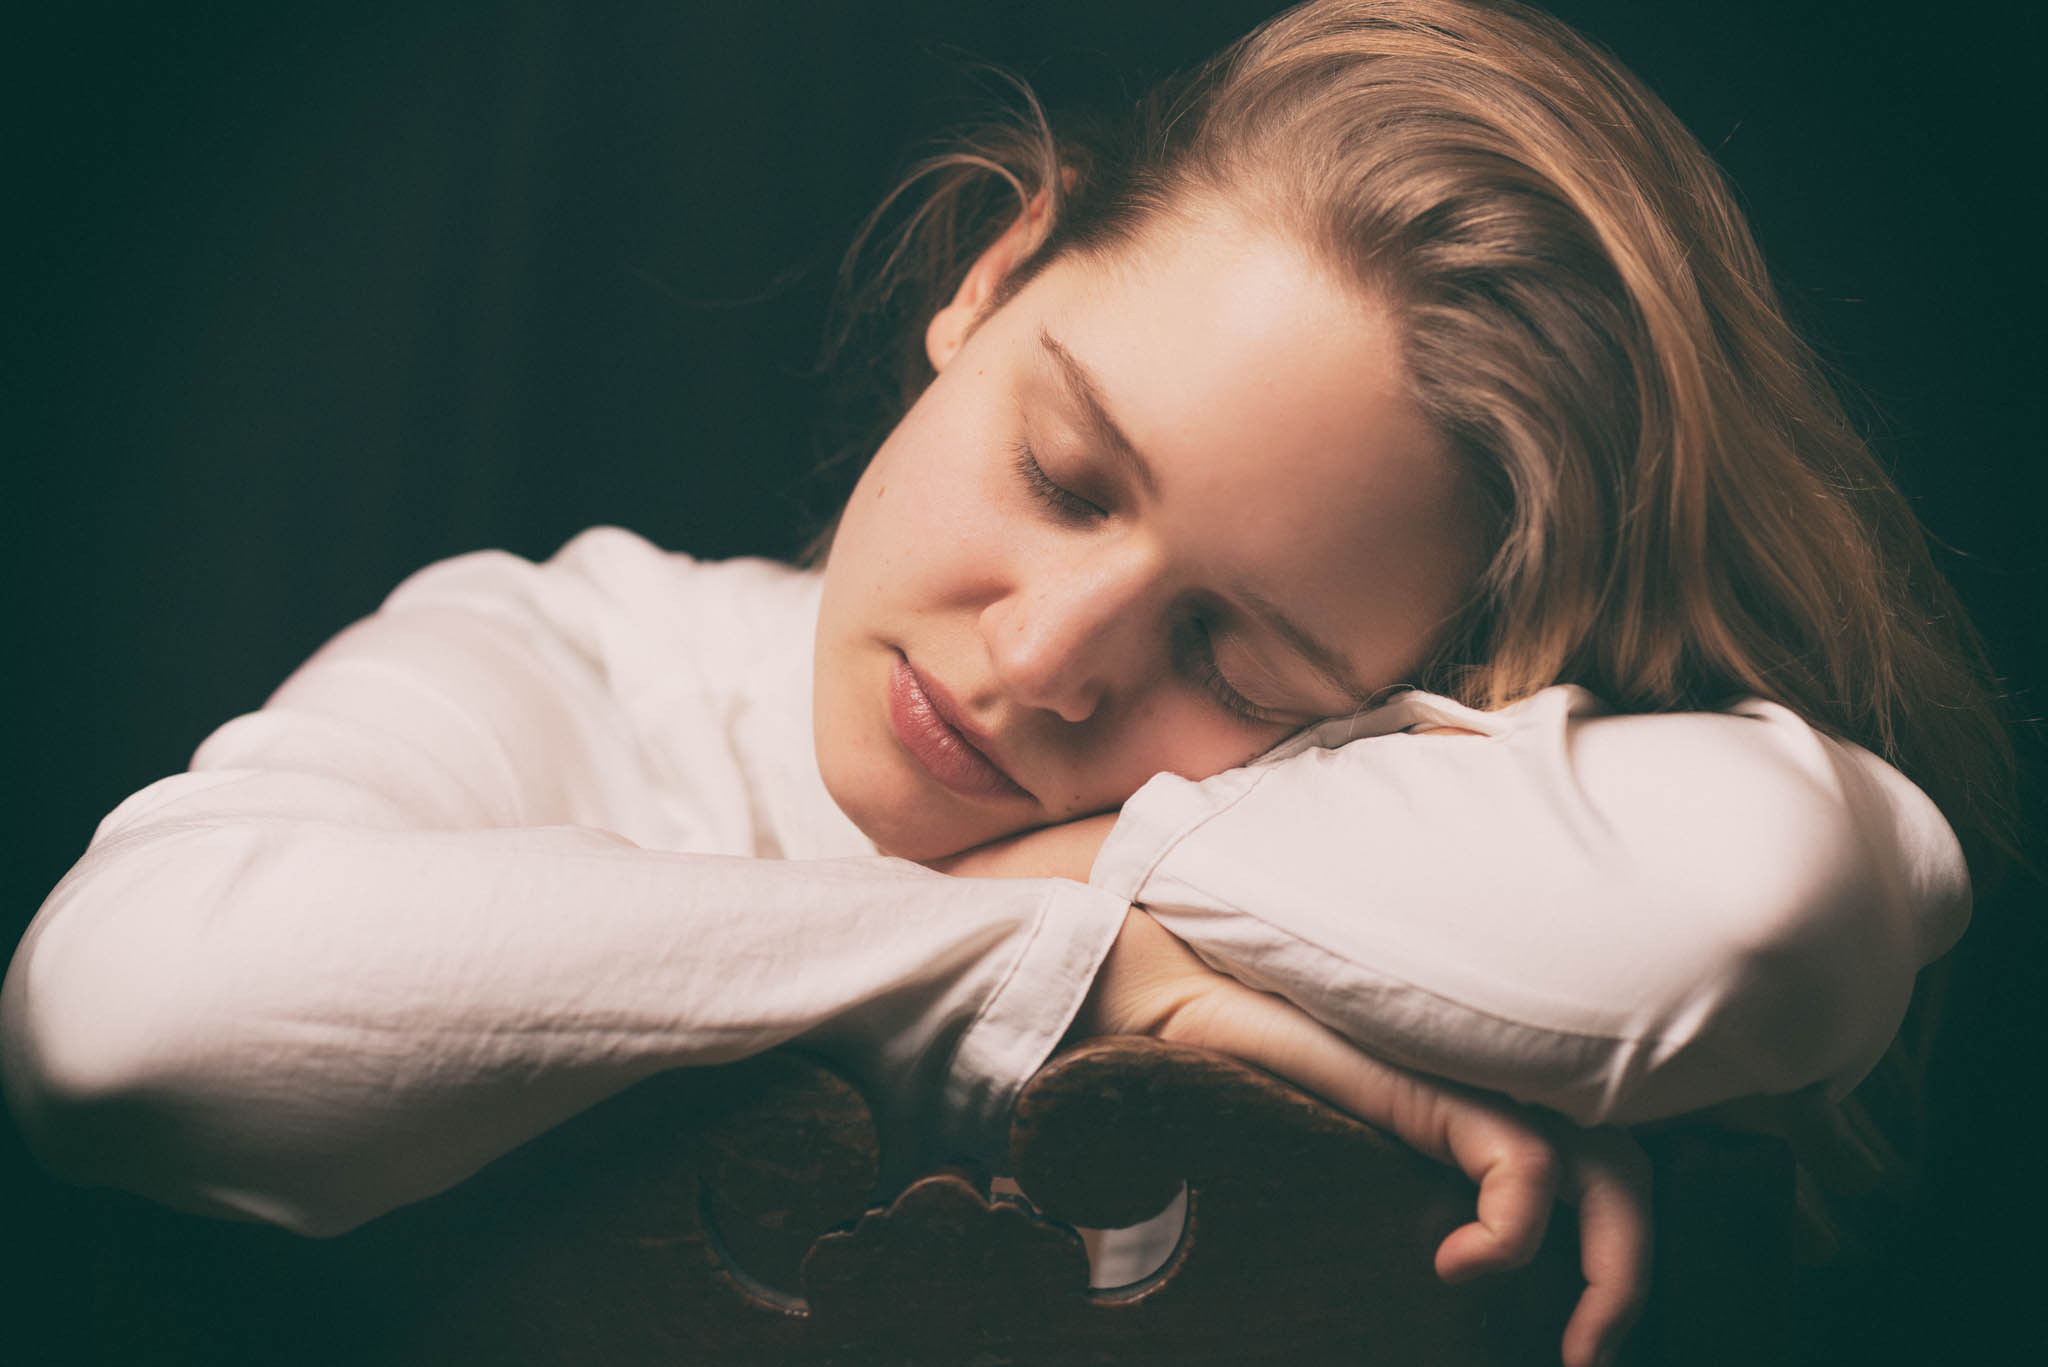 Portraitaufnahme einer schlafenden, jungen Frau. Es ist ihr Kopf zu sehen, den sie auf ihren Armen abgelegt hat, die wiederum auf einer Stuhllehne aufliegen. Sie wirkt sehr friedlich und rein in ihrer Pose und der weißen Bluse.